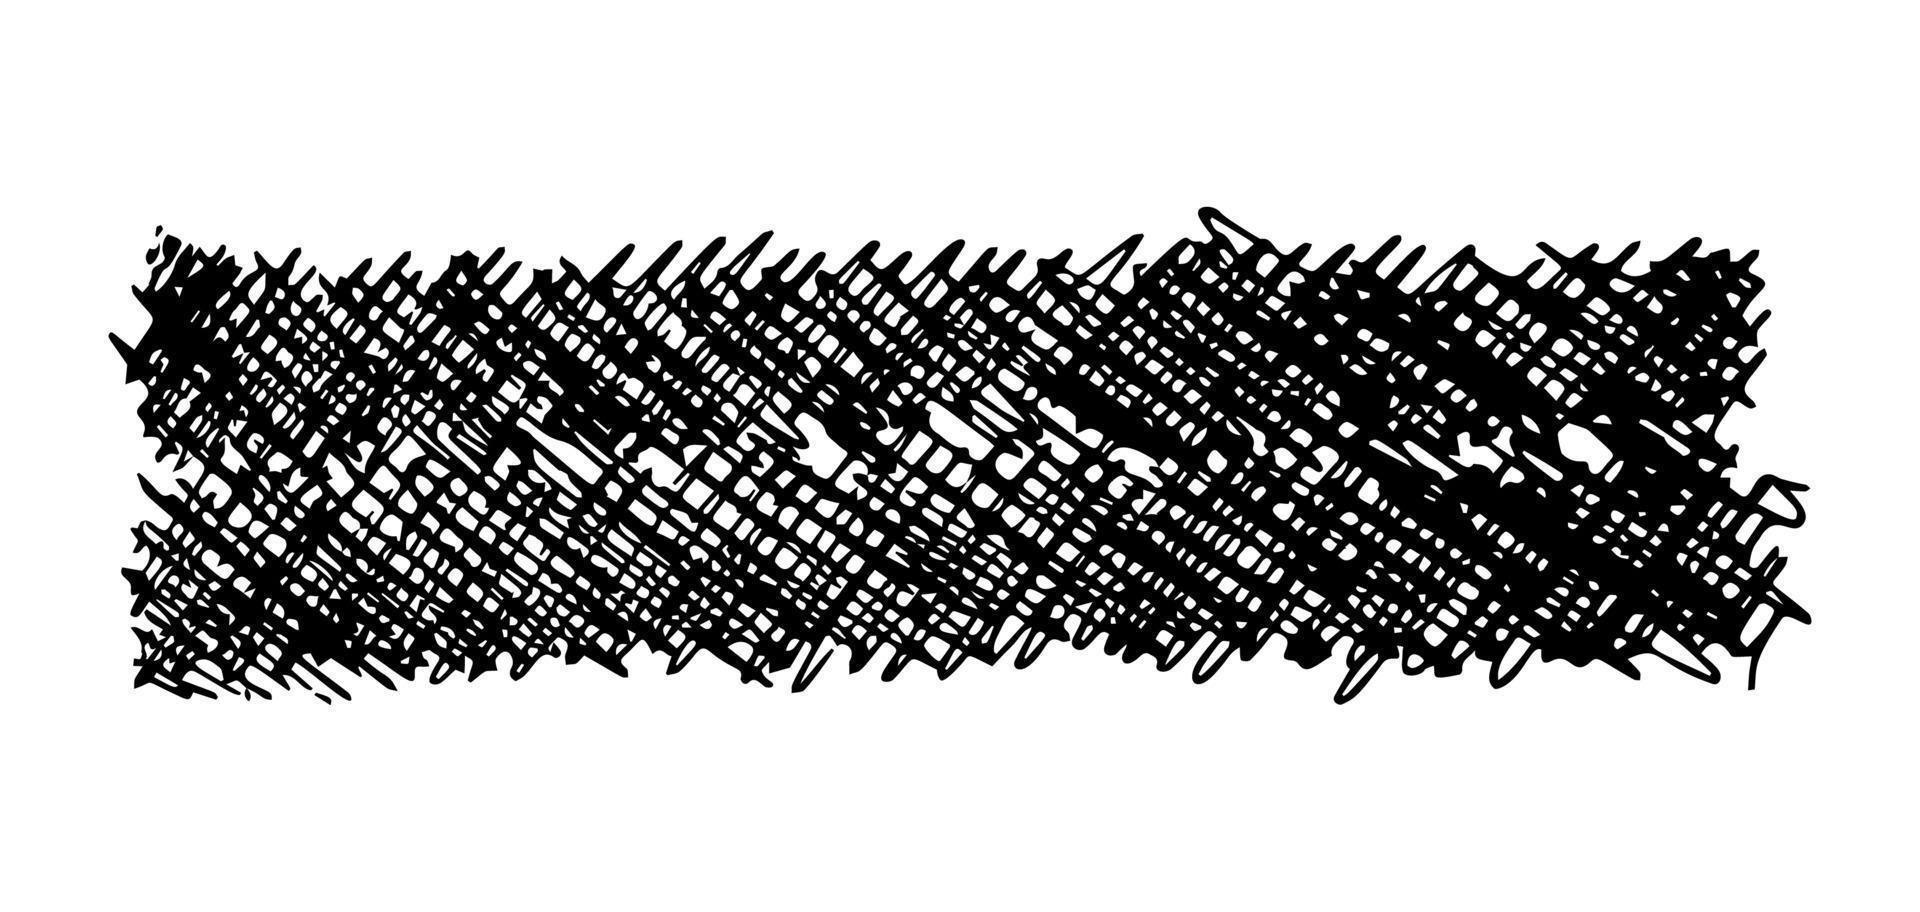 skiss klottra smeta. svart penna teckning i de form av en rektangel på vit bakgrund. bra design för några syften. vektor illustration.